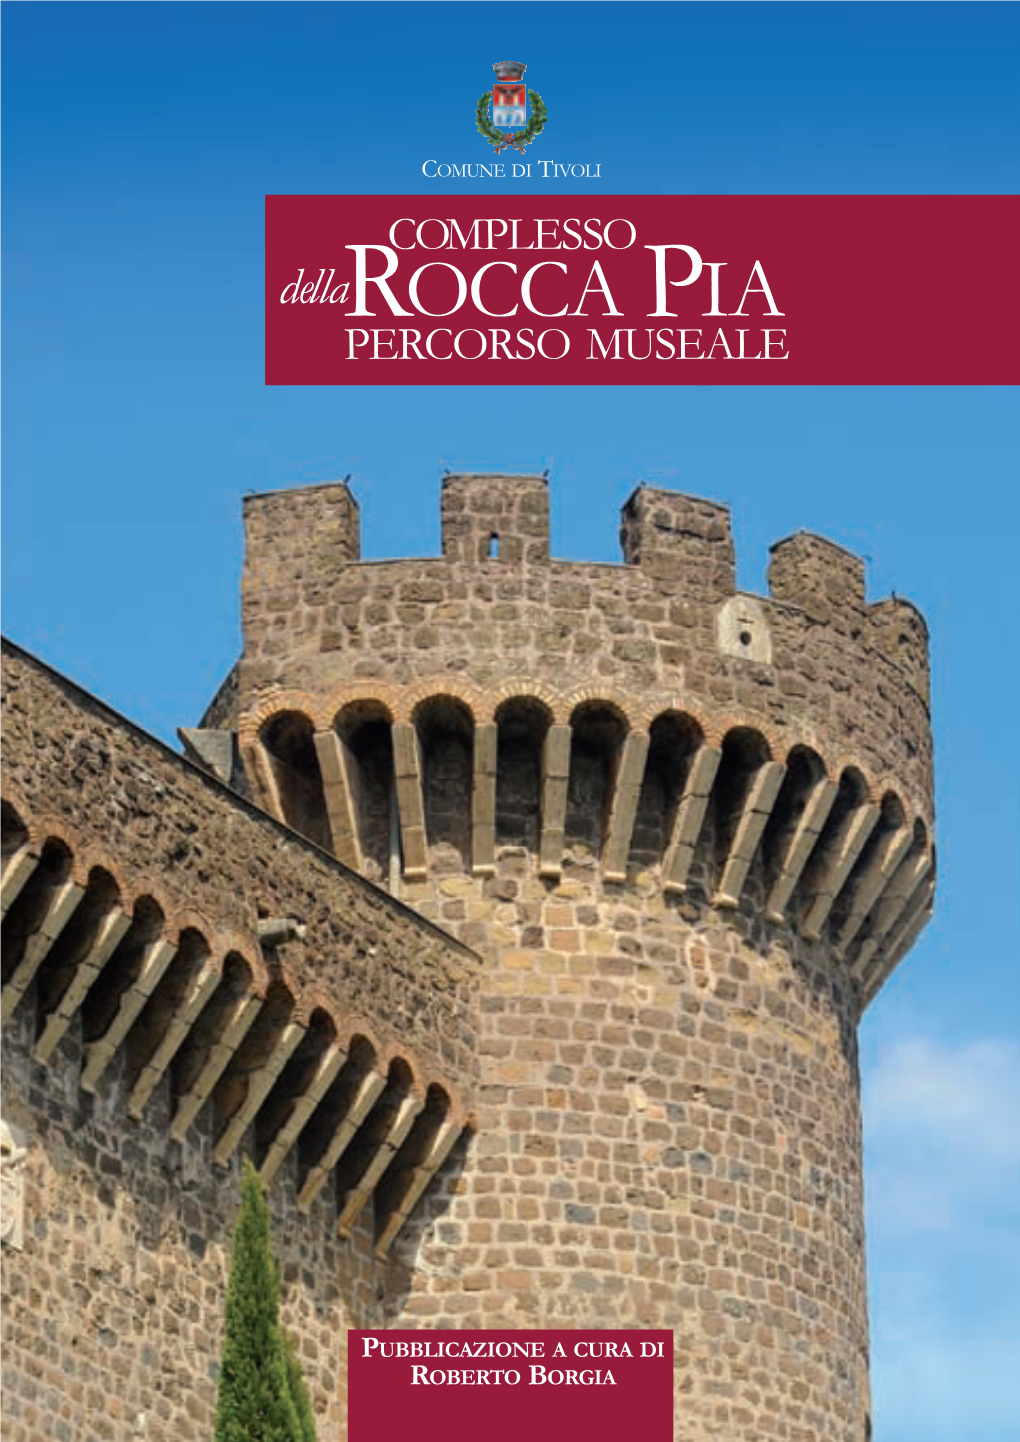 Rocca Pia 30-04-2019 15:35 Pagina 1